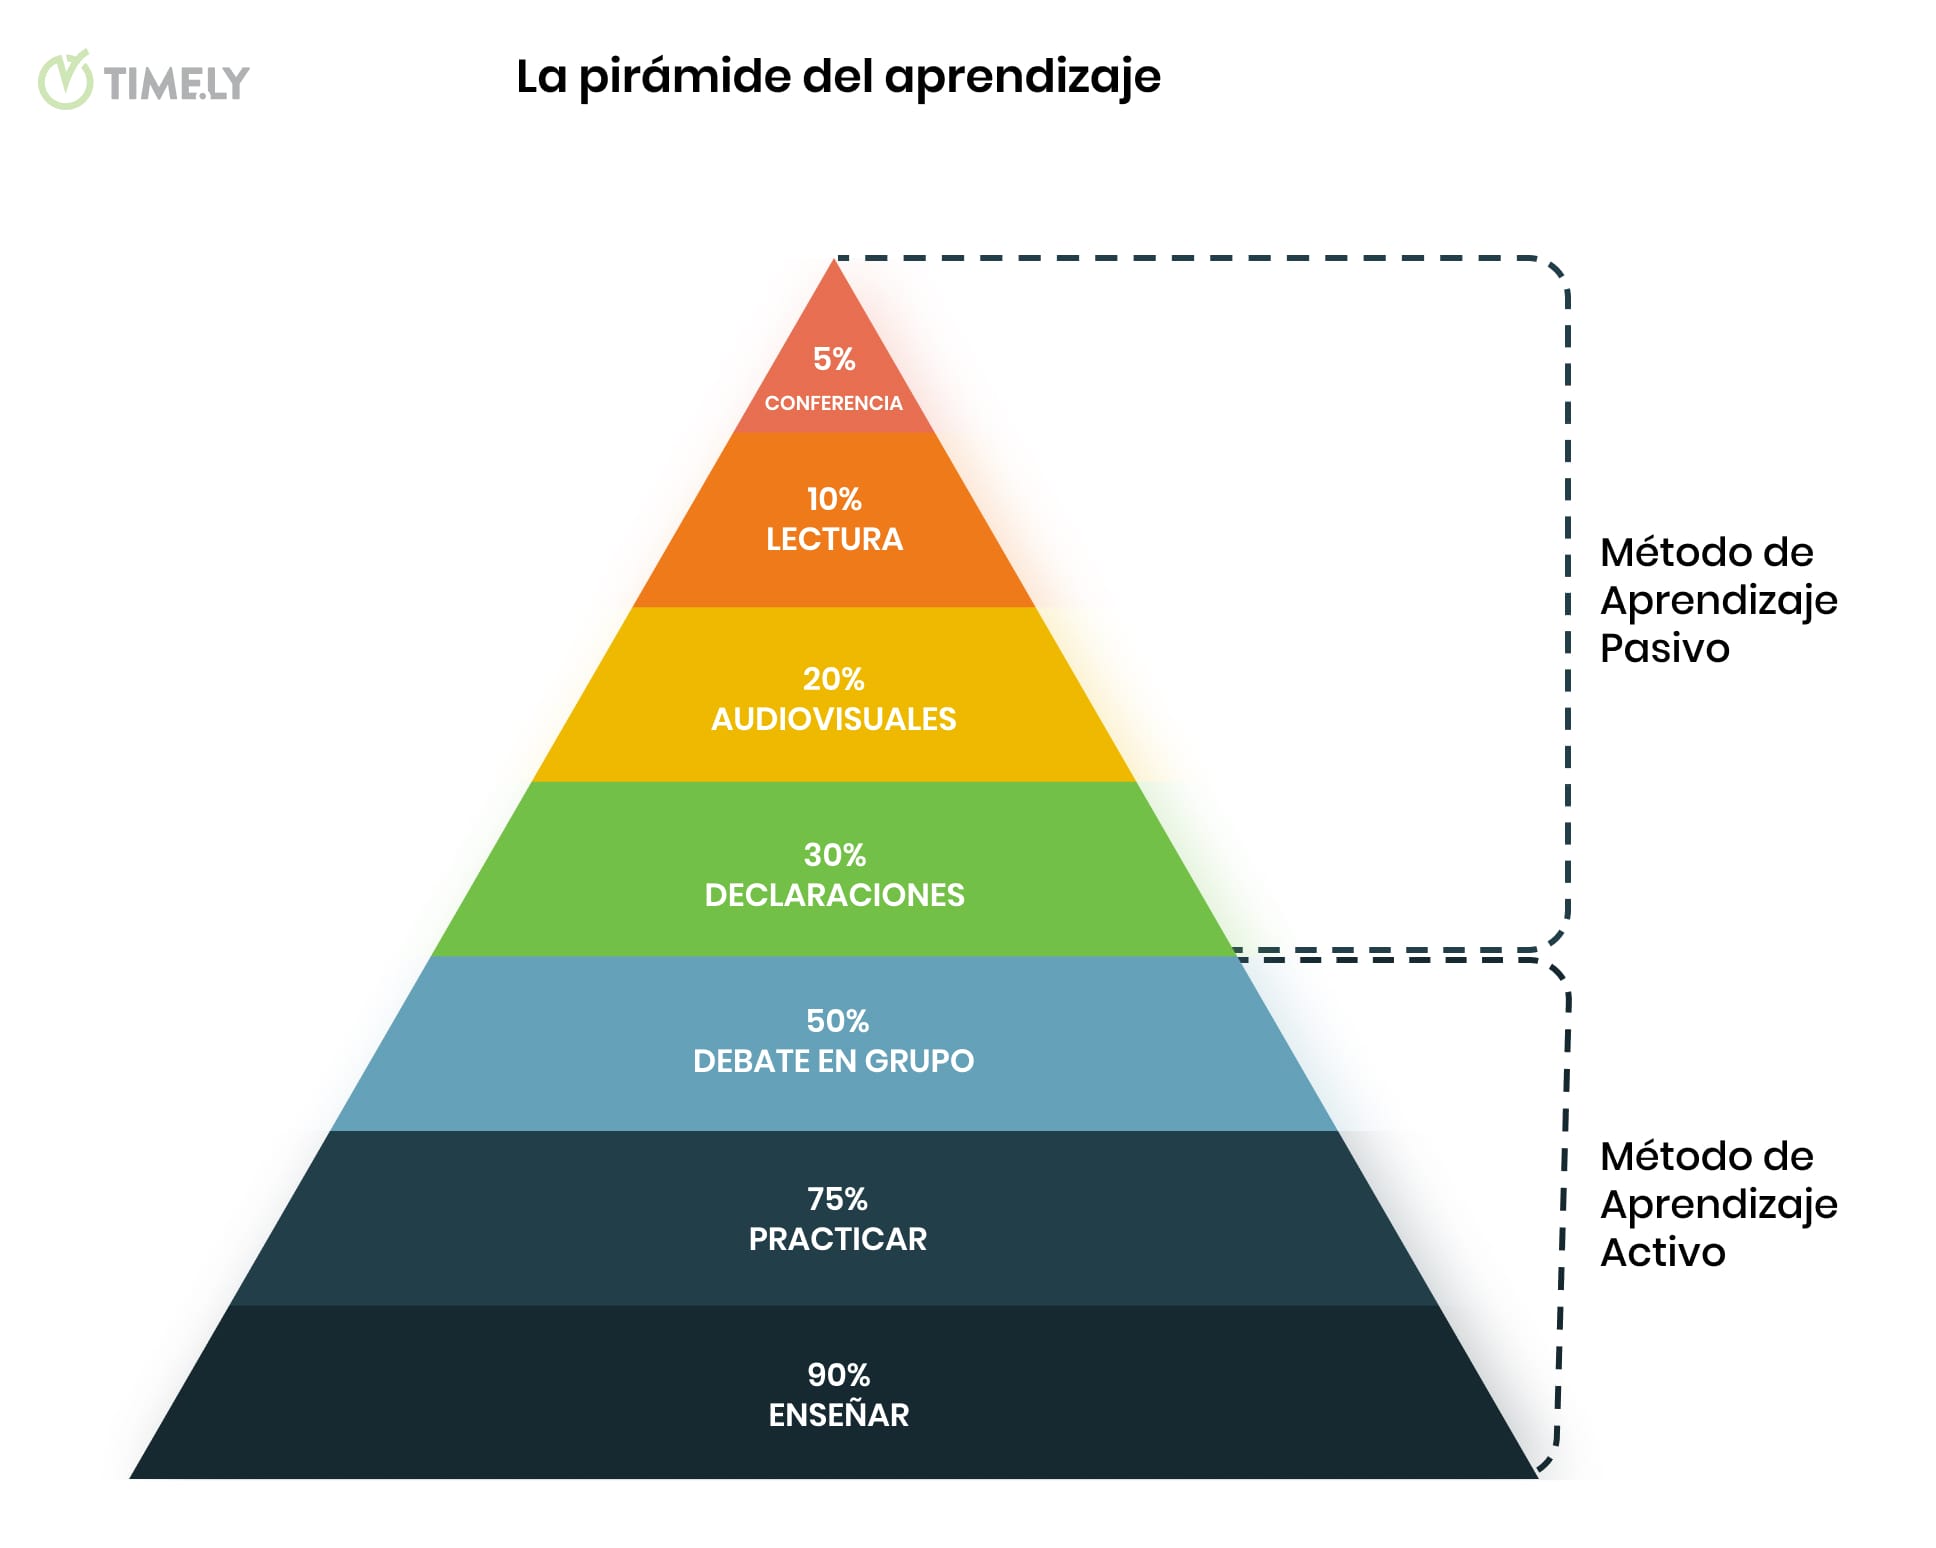 Una imagen infográfica descriptiva de la Pirámide de Aprendizaje de Edgar Dale, con los métodos de aprendizaje activo y pasivo ilustrados y las respectivas tasas de retención.